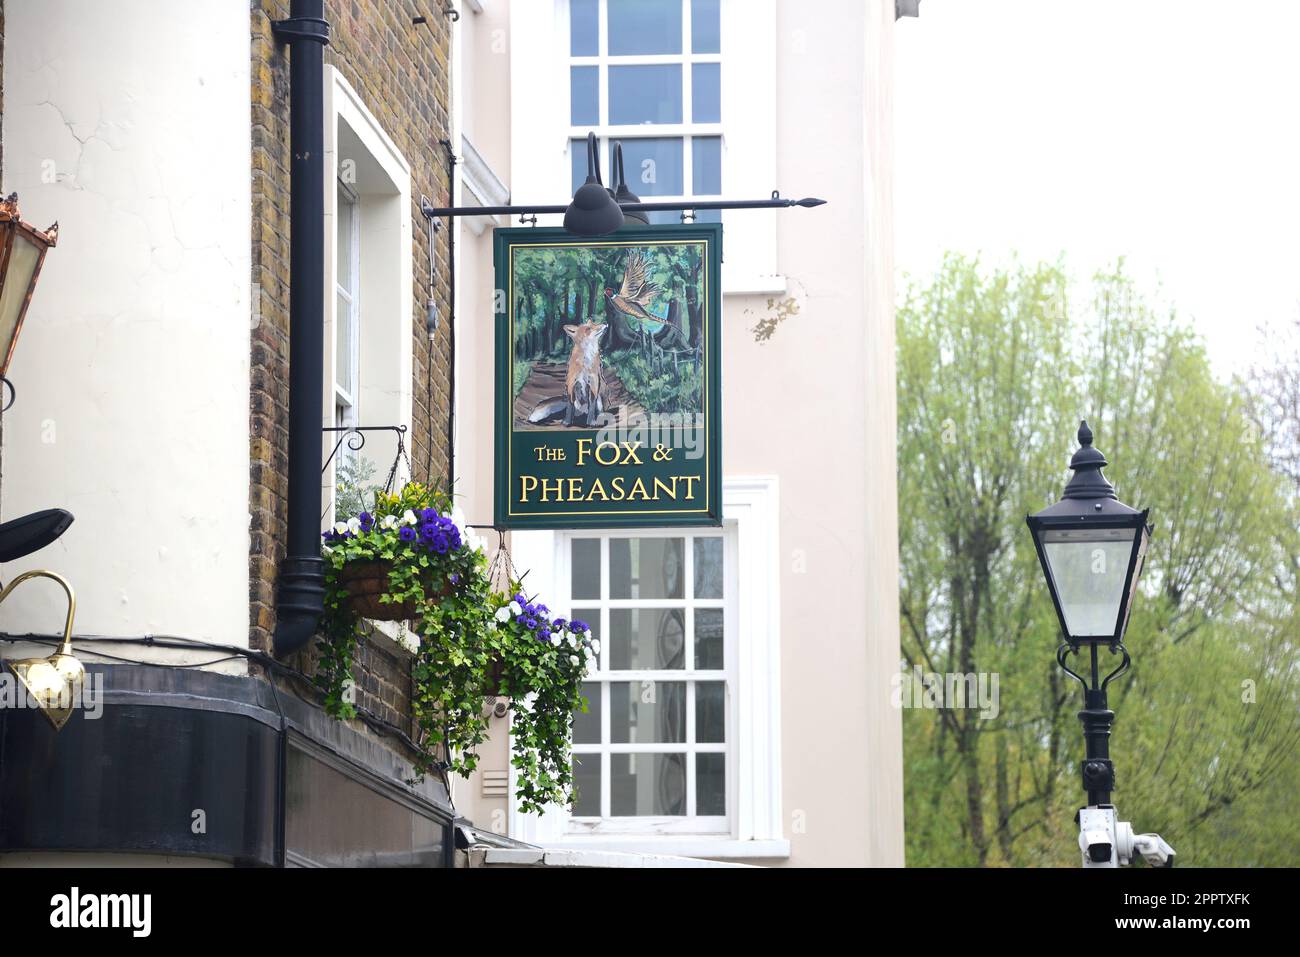 The Fox & Pheasant pub di proprietà del cantante James Blunt, Billing Street, Chelsea, Londra Foto Stock